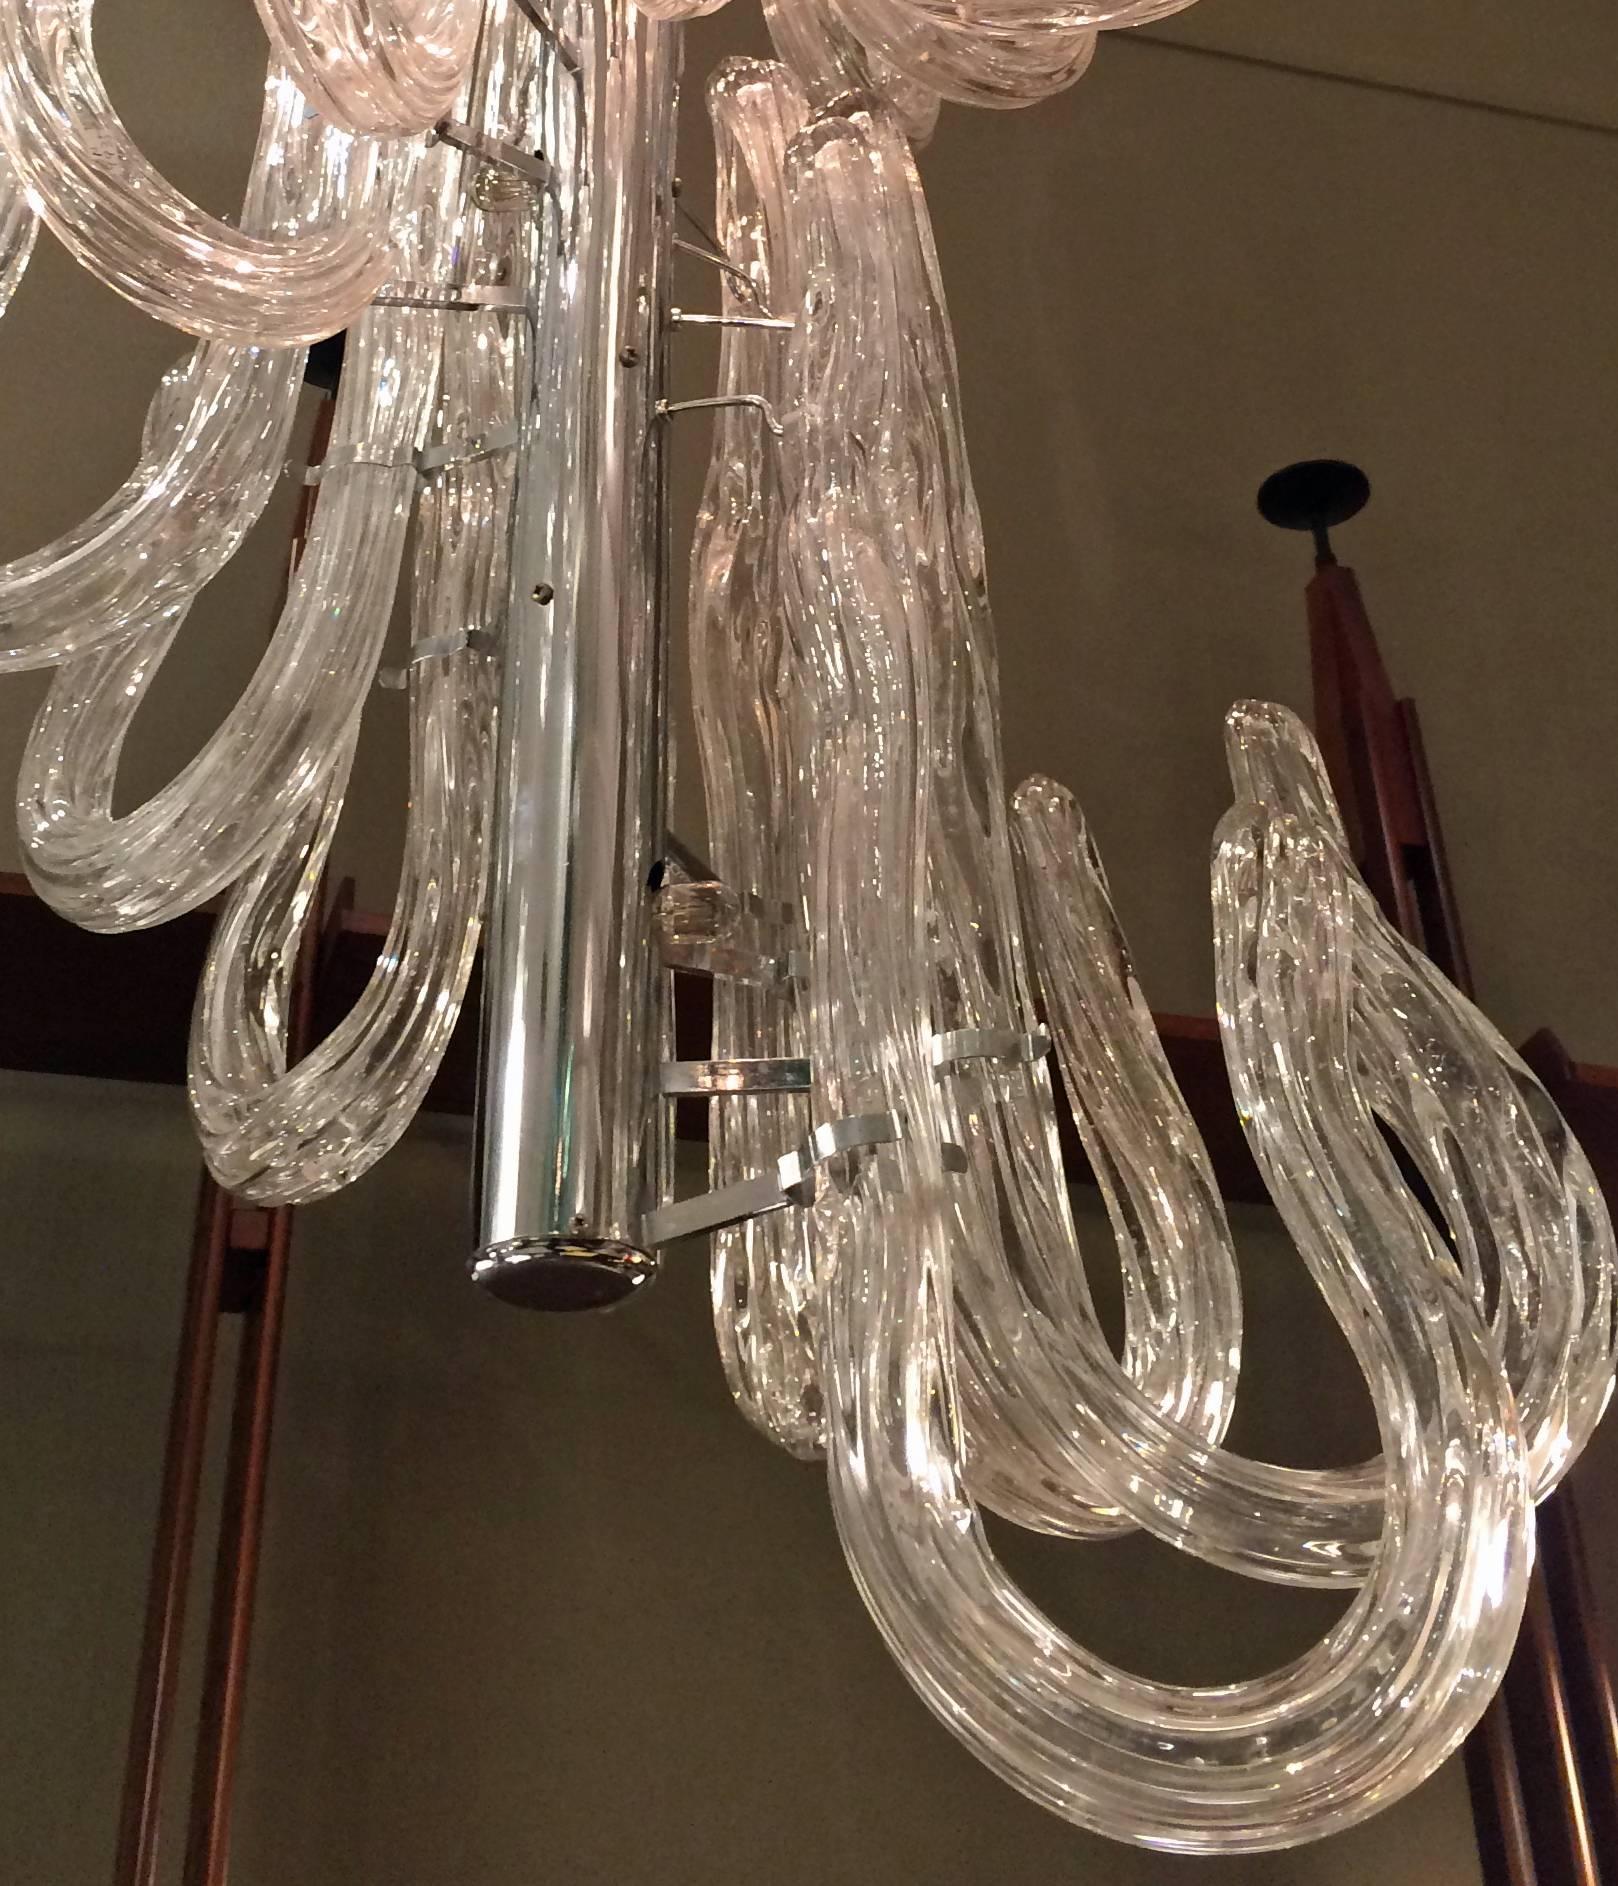 Klare Glaselemente in Form von Stöcken, die kopfüber an einer vernickelten Stange hängen.

      

